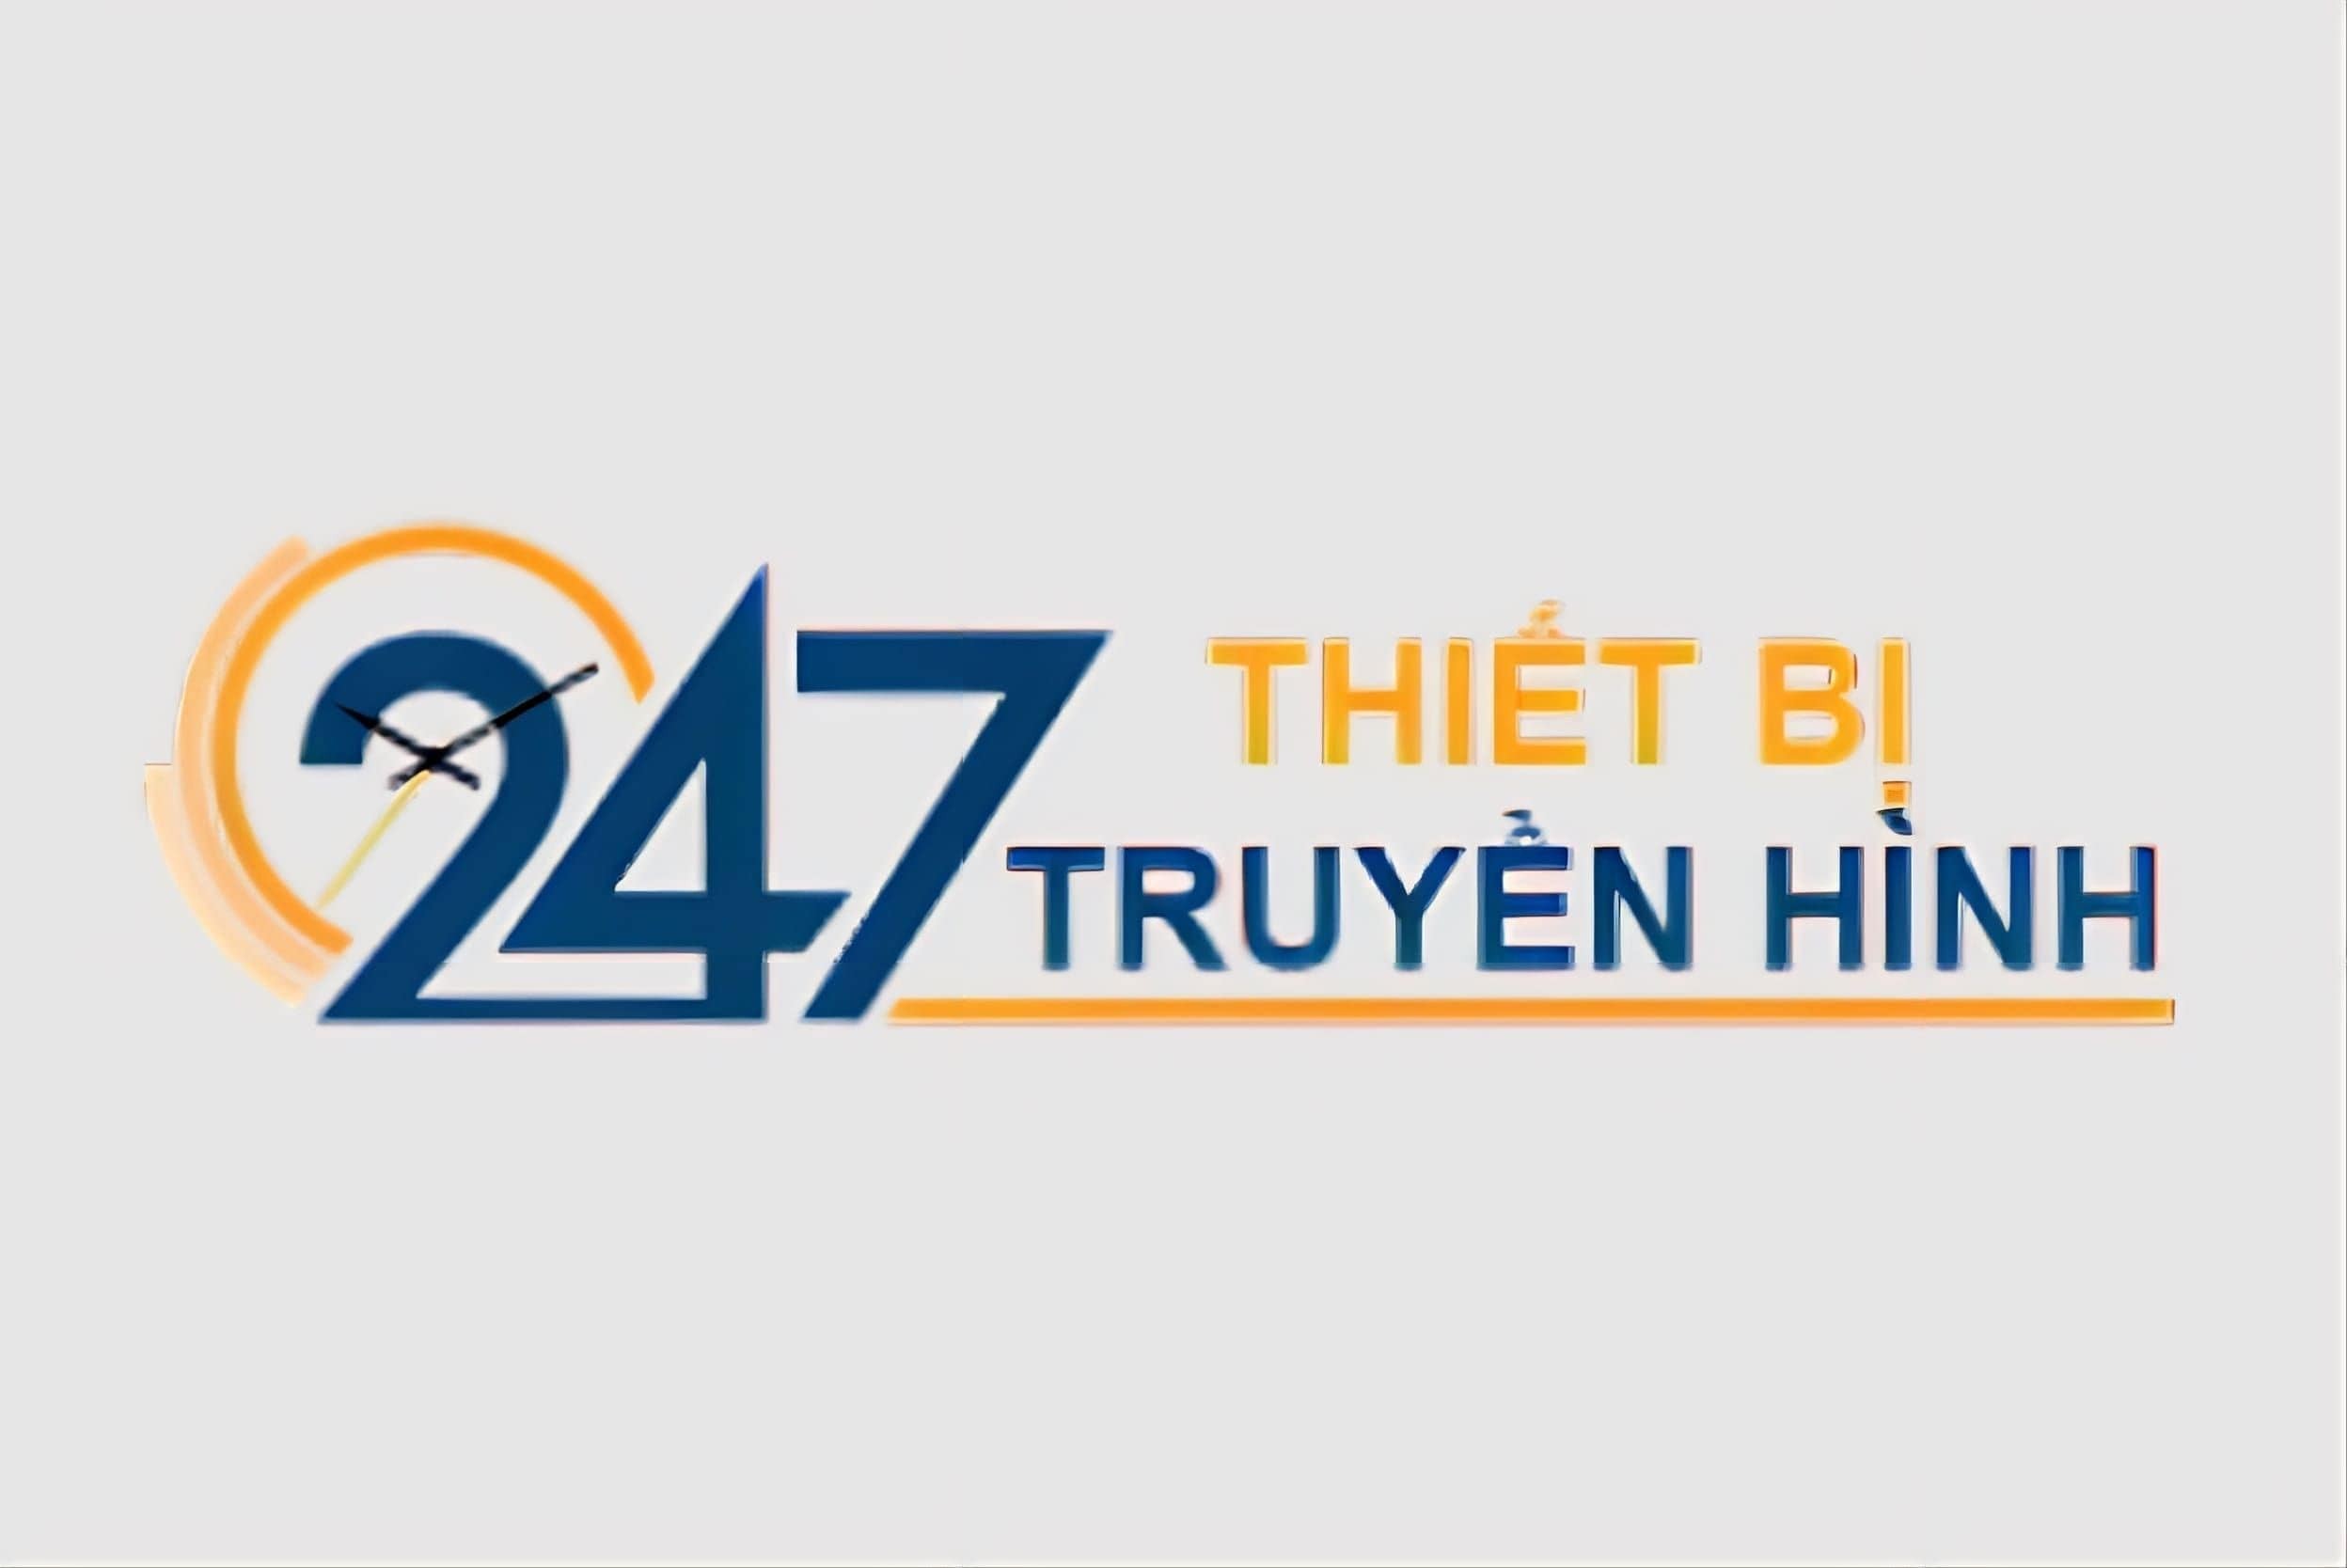 thiet-bi-truyen-hinh-247-logo 